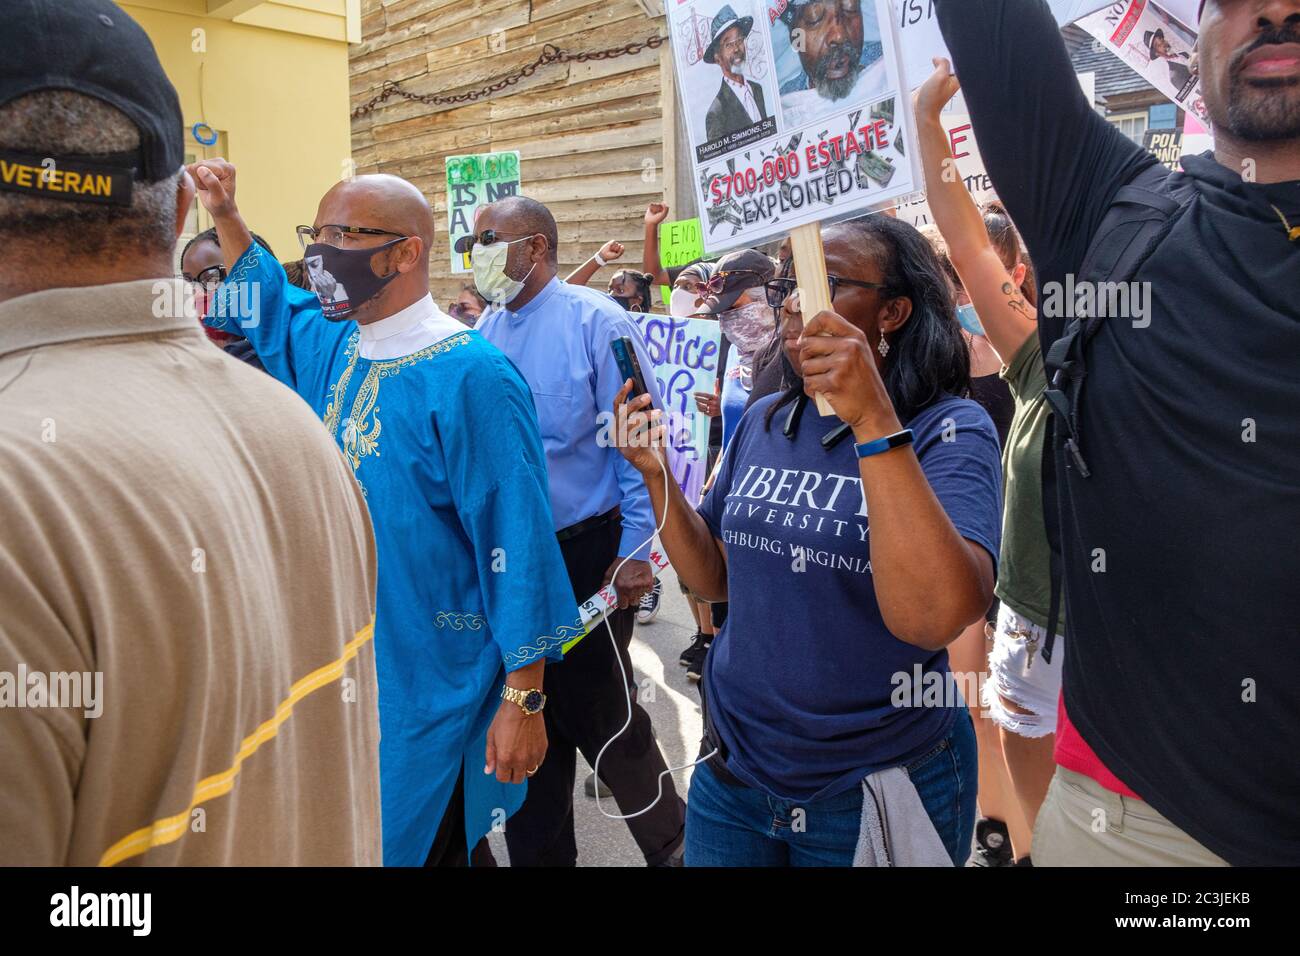 Les vies noires comptent pour le rallye. St. Augustine, Floride Banque D'Images